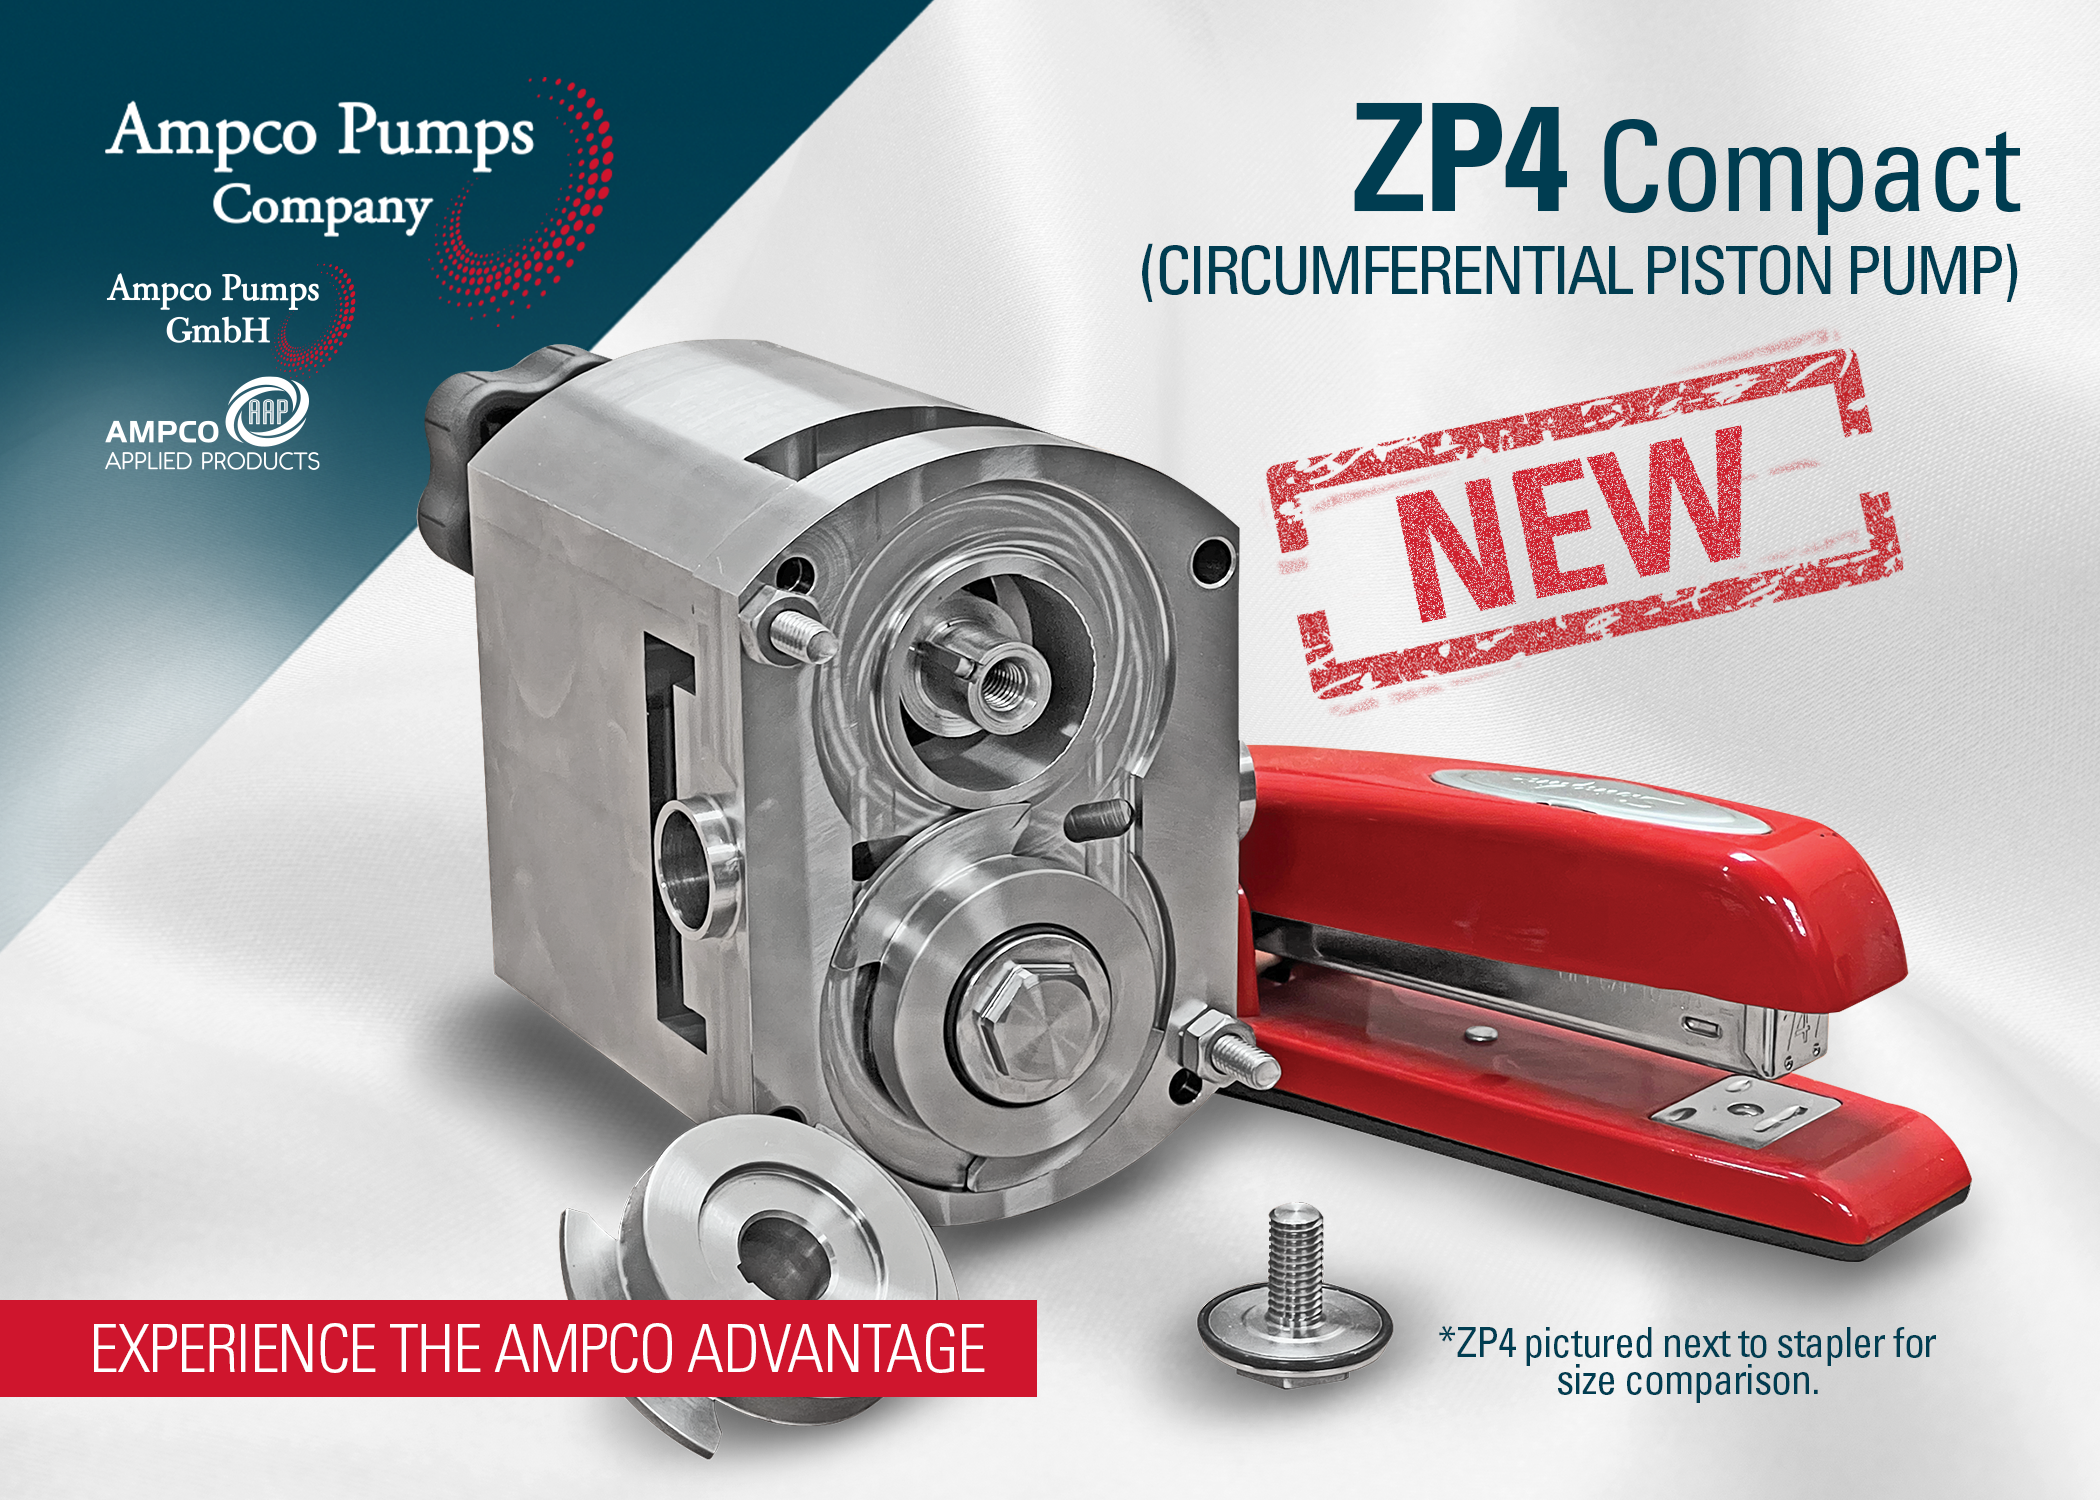 Ampco Pumps ZP4 Kompakte Umfangskolbenpumpe für geringe Fördermengen und Dosierung